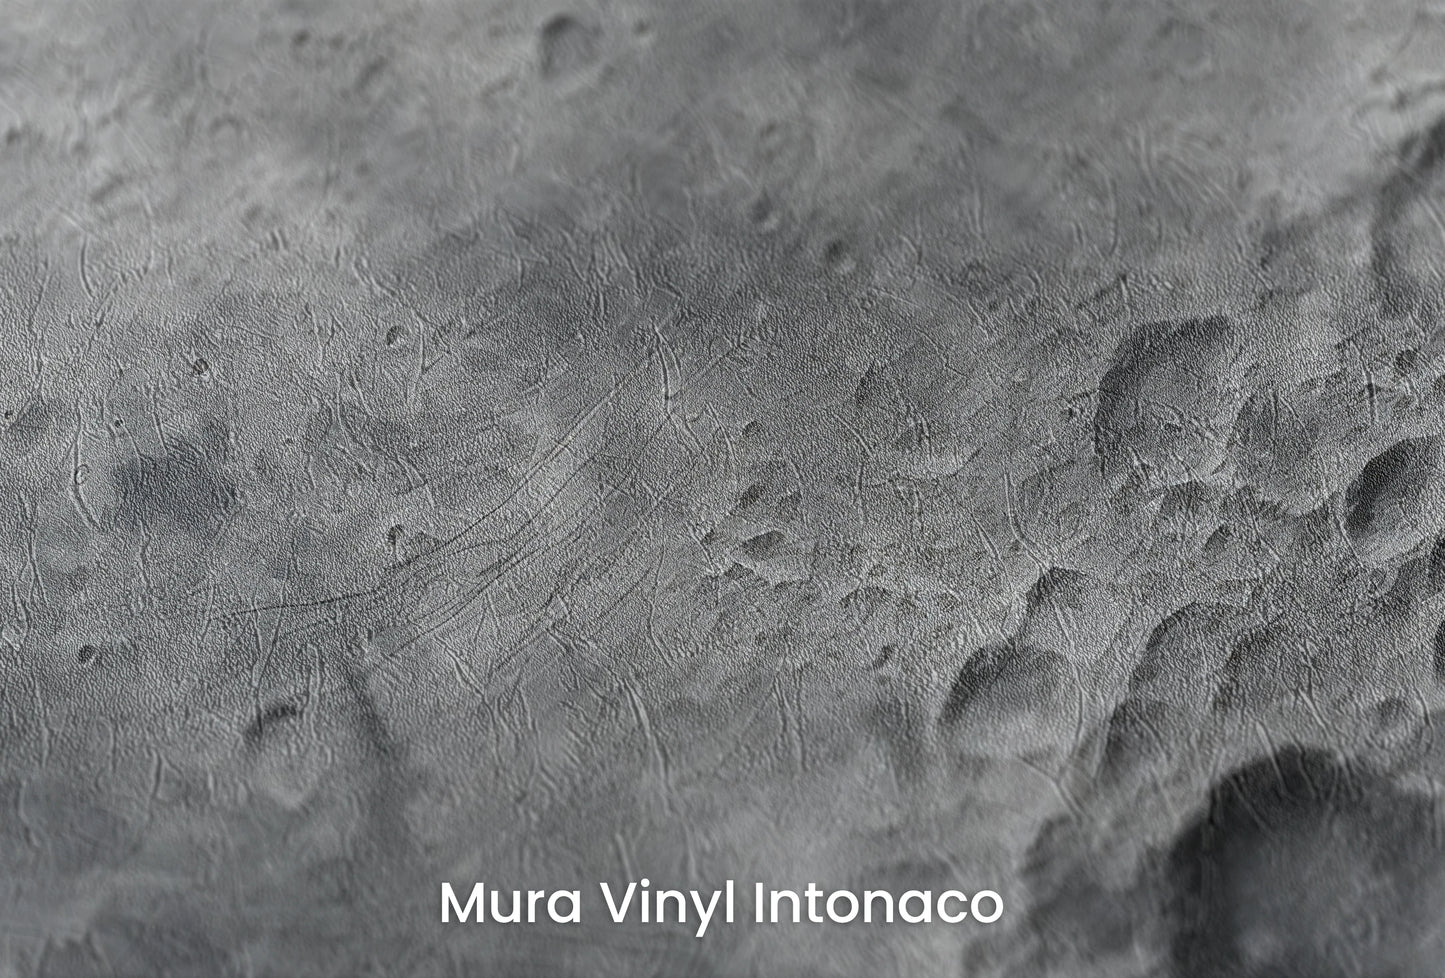 Zbliżenie na artystyczną fototapetę o nazwie Lunar Detail na podłożu Mura Vinyl Intonaco - struktura tartego tynku.